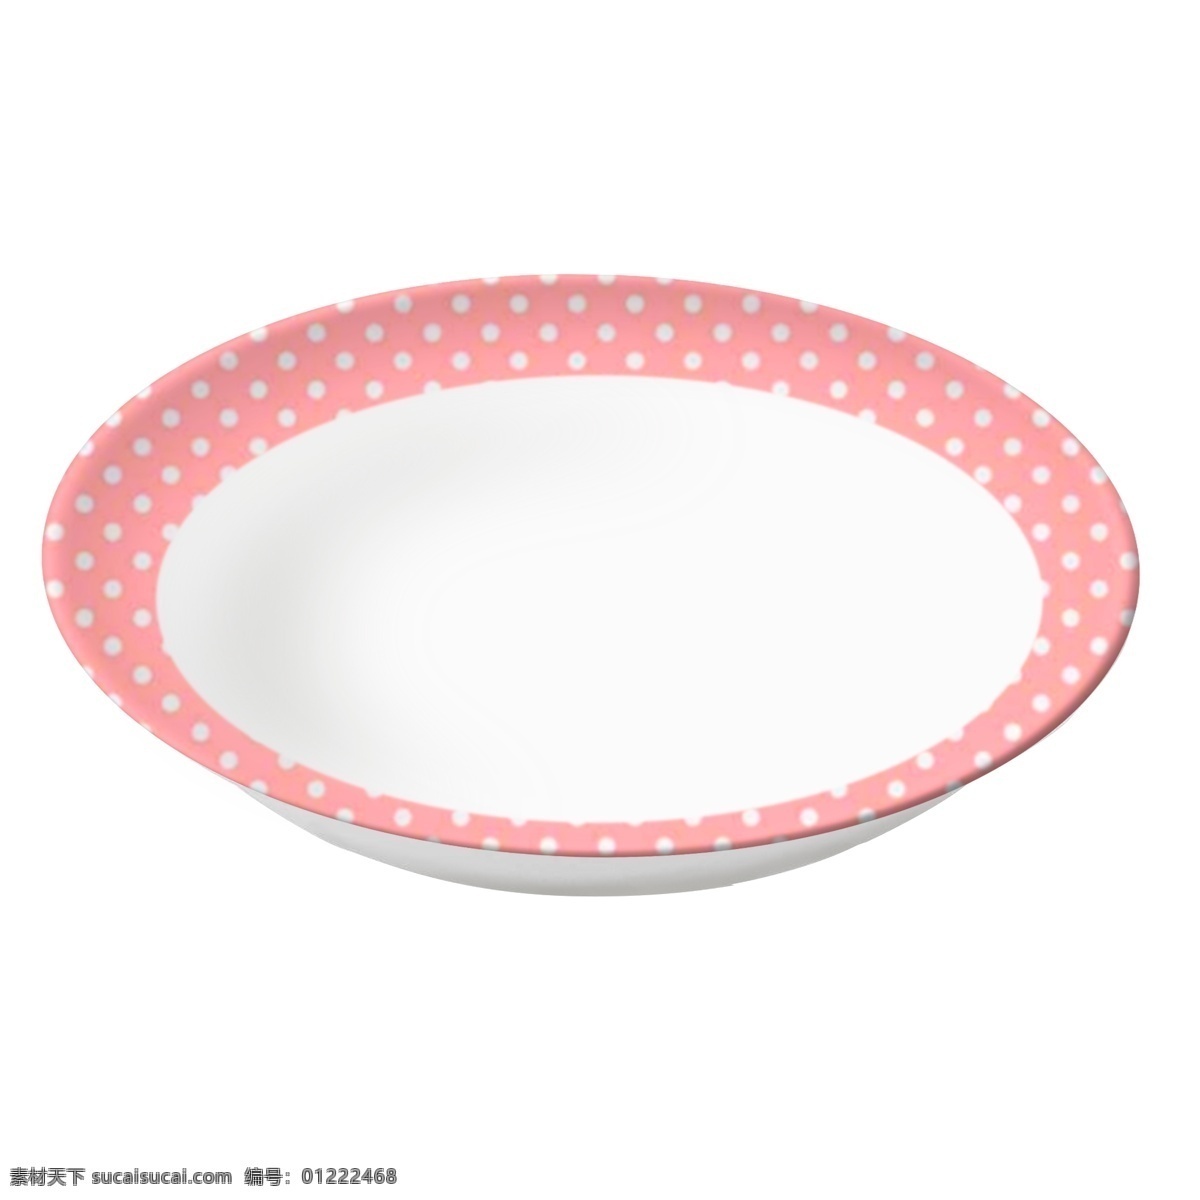 盘子 实物 底座 斑点 花纹 可爱 盘 盘子实物 有底座 可爱盘 粉色盘子 装饰图案盘 儿童盘 汤盘 菜盘 餐具